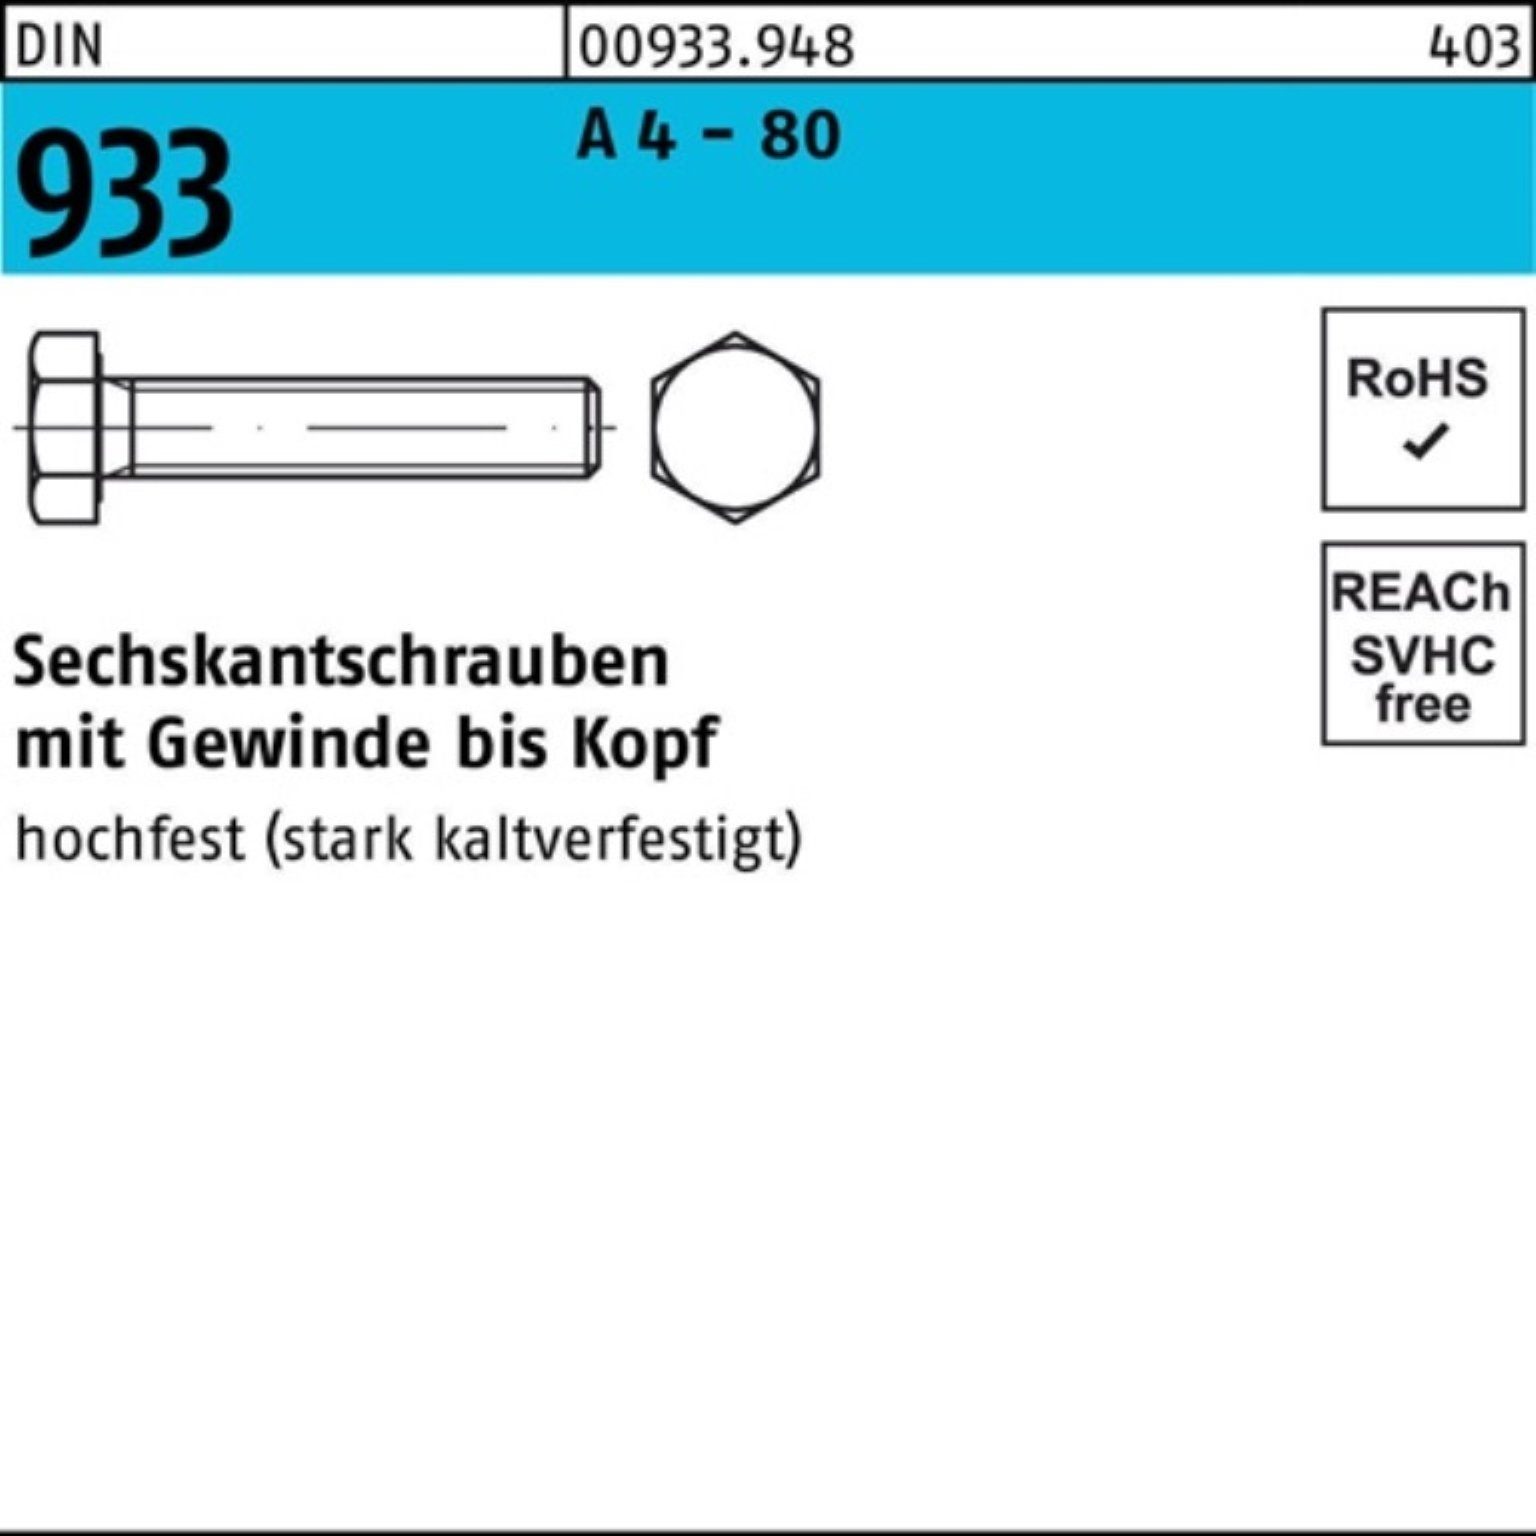 Reyher Sechskantschraube 100er Pack Sechskantschraube DIN 933 VG M10x 40 A 4 - 80 100 Stück DI